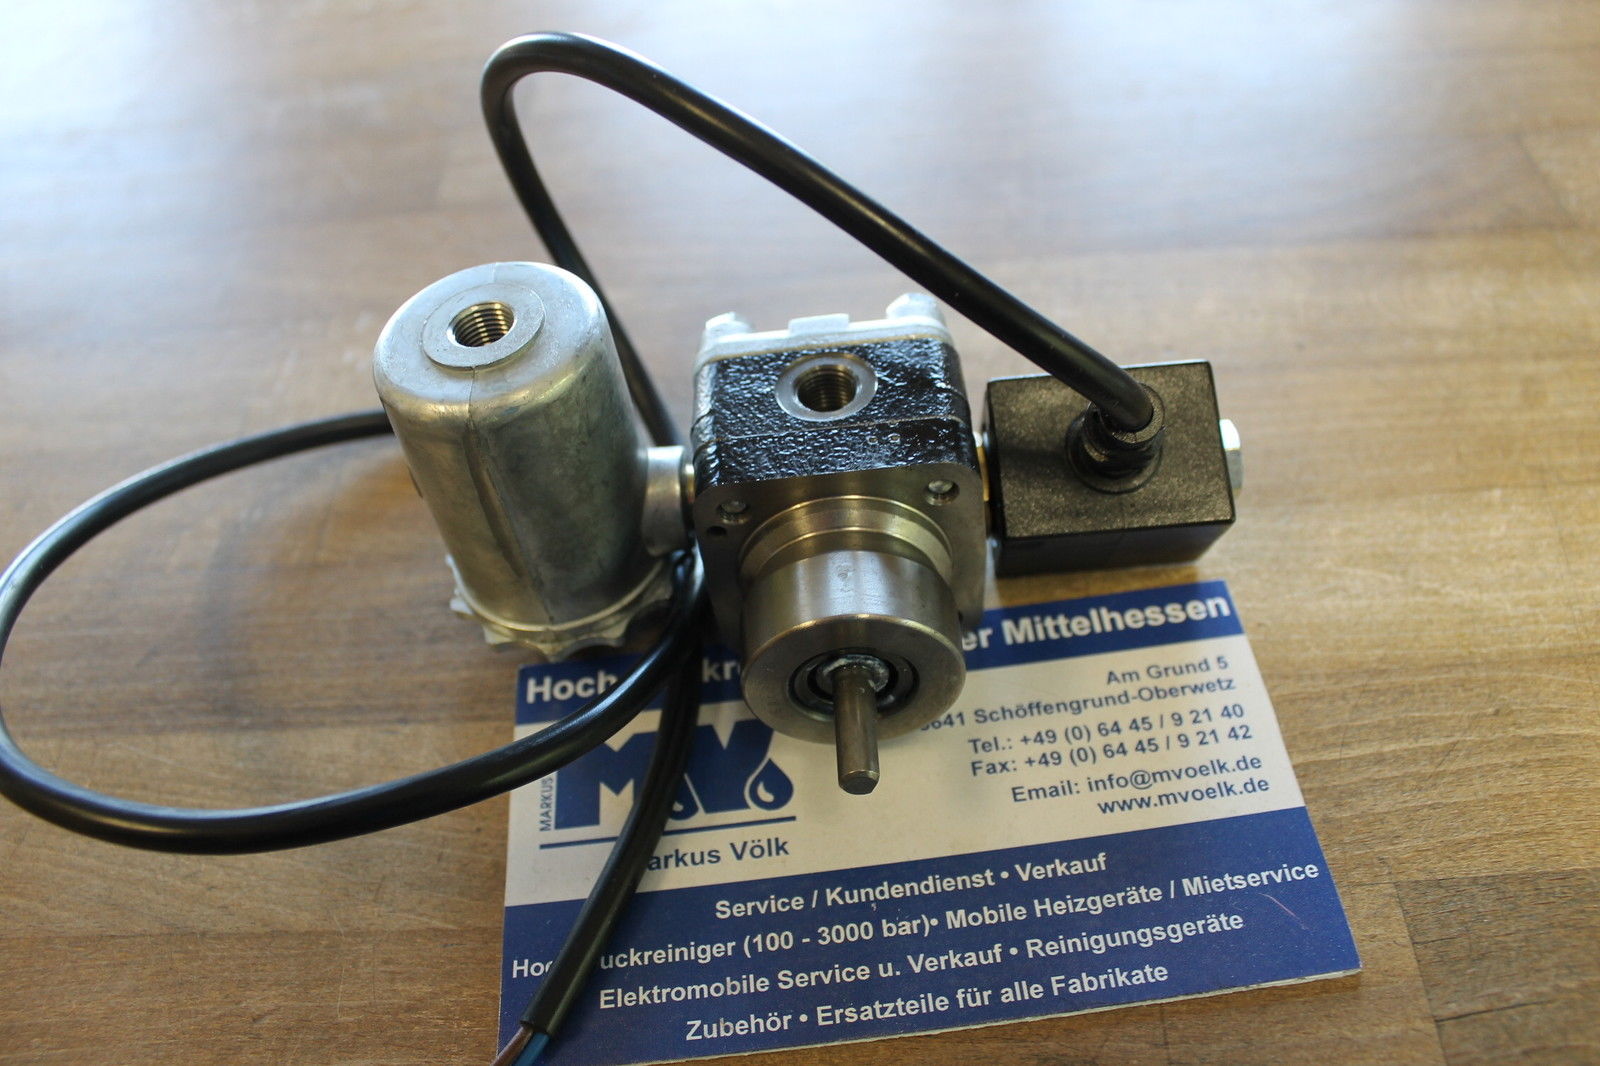 Pumpe pompe oil pump für Ölbrenner Ölpumpe SP-46-32 MV 24 V für HDS Kärcher